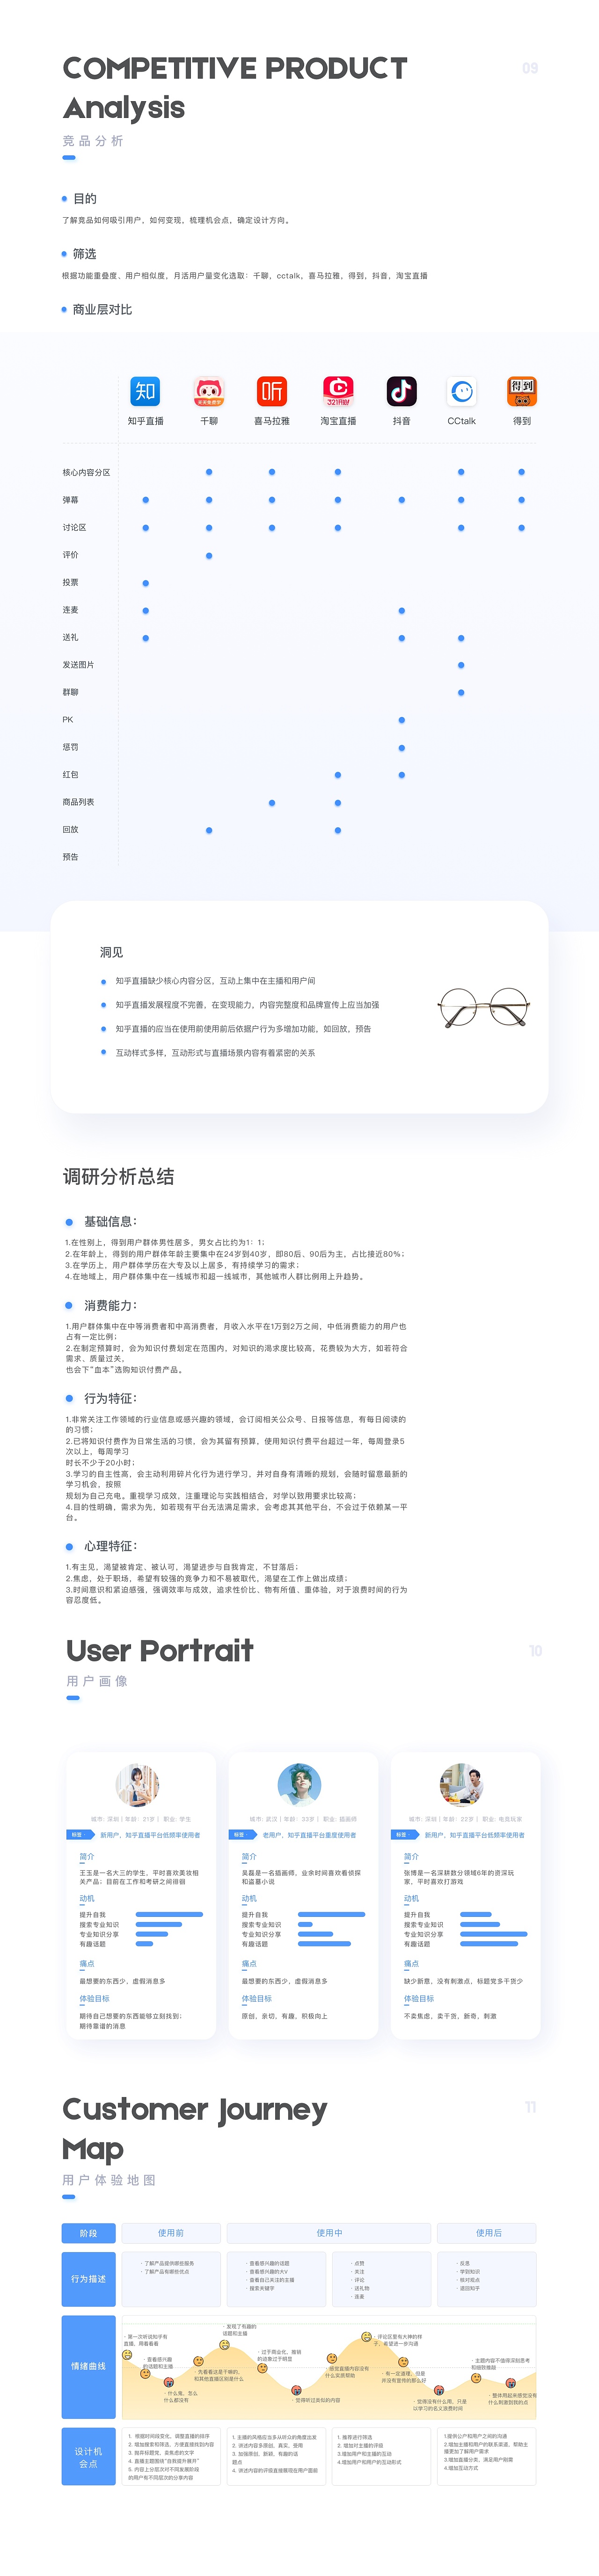 「知群X知乎 中国产品设计大赛」成为更好的自己 - 图4